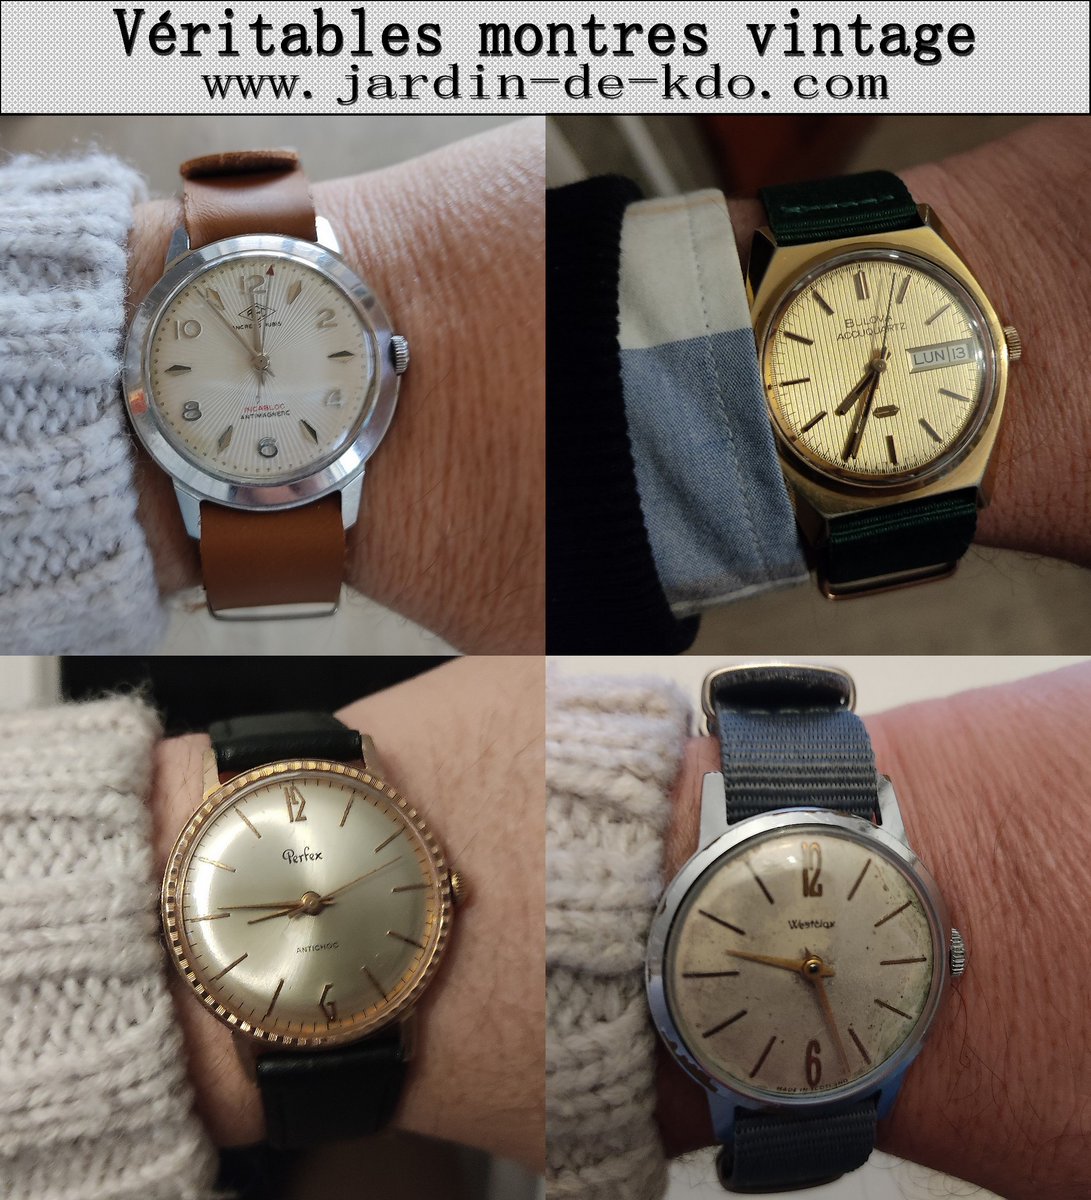 Nouveautés : montres anciennes en cliquant sur le lien suivant : jardin-de-kdo.com/94-montres-vin…
-
#vintage #montresanciennes #watchvintage #70s #oldwatches #montreretro #60s #stylewatch